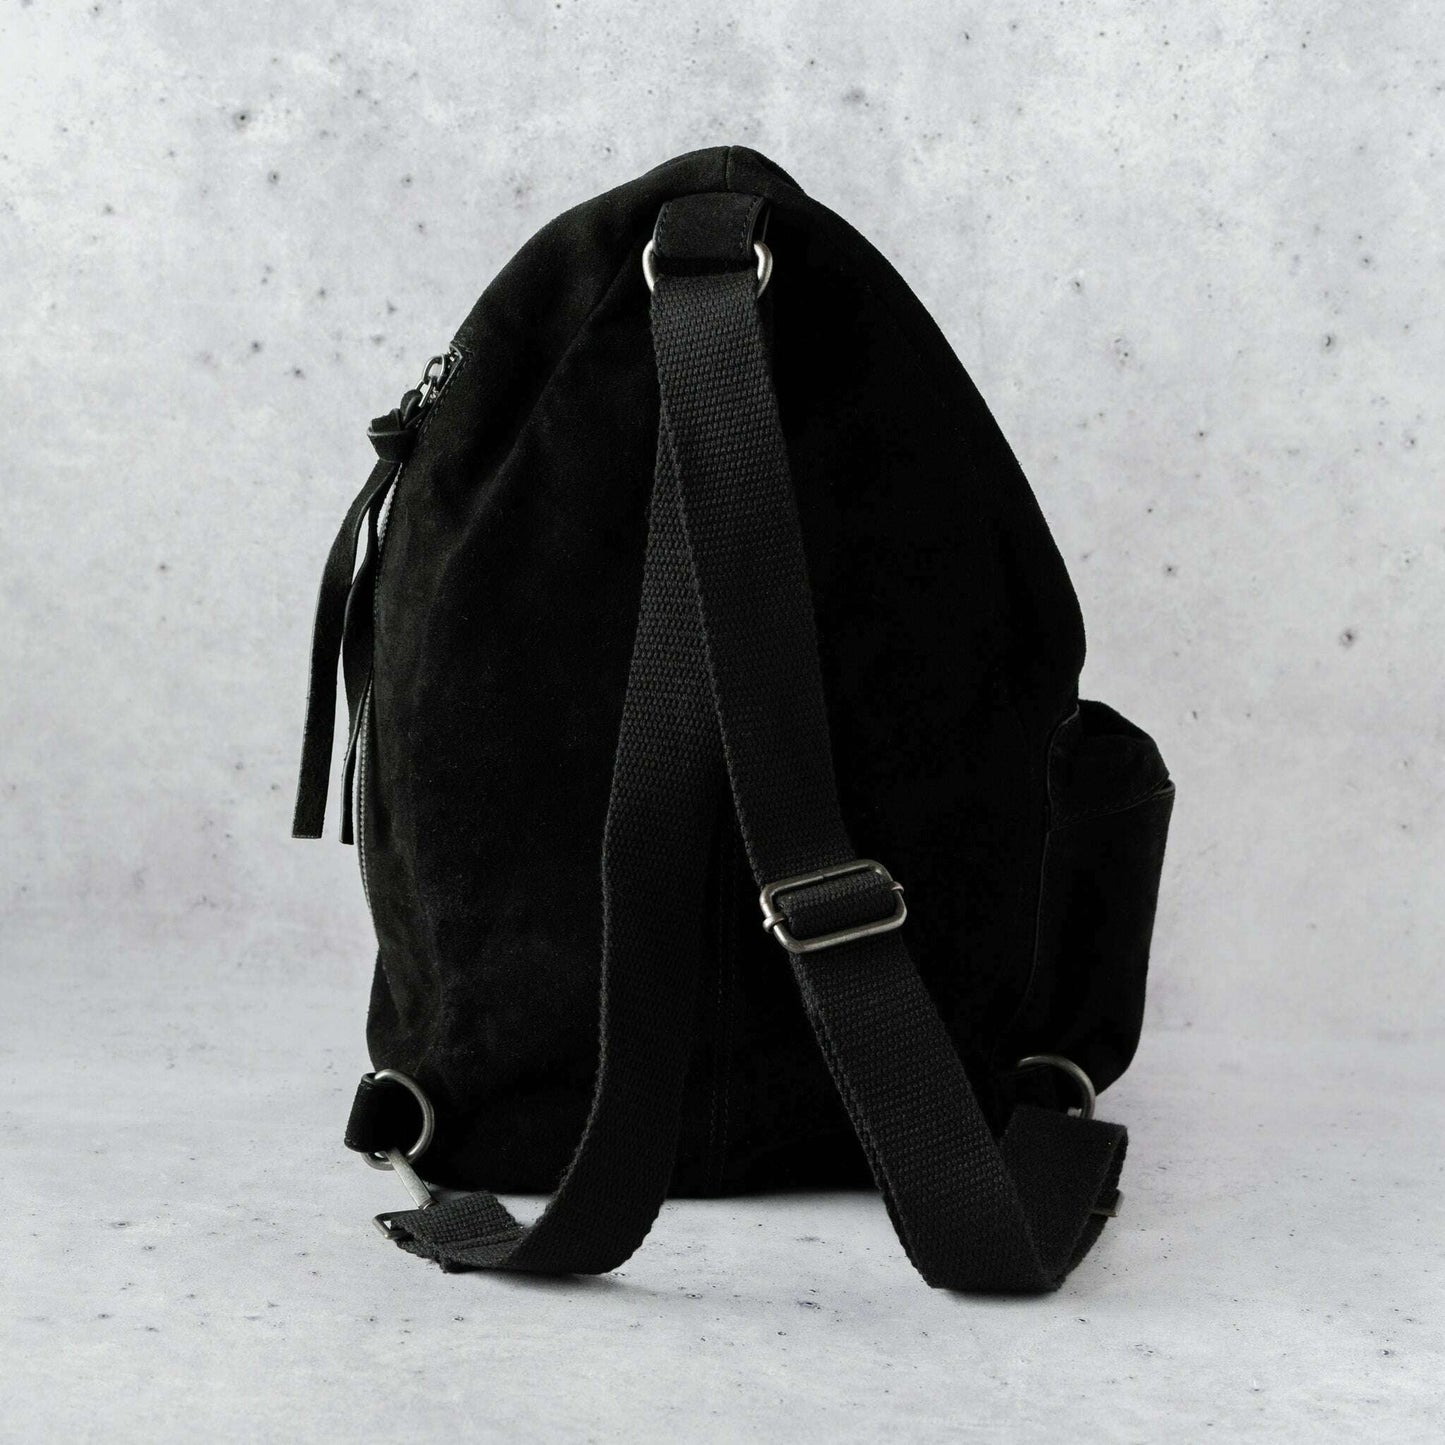 Free People - Oxford Sling Bag - Black Suede, Handbags, Free People, Plum Bottom